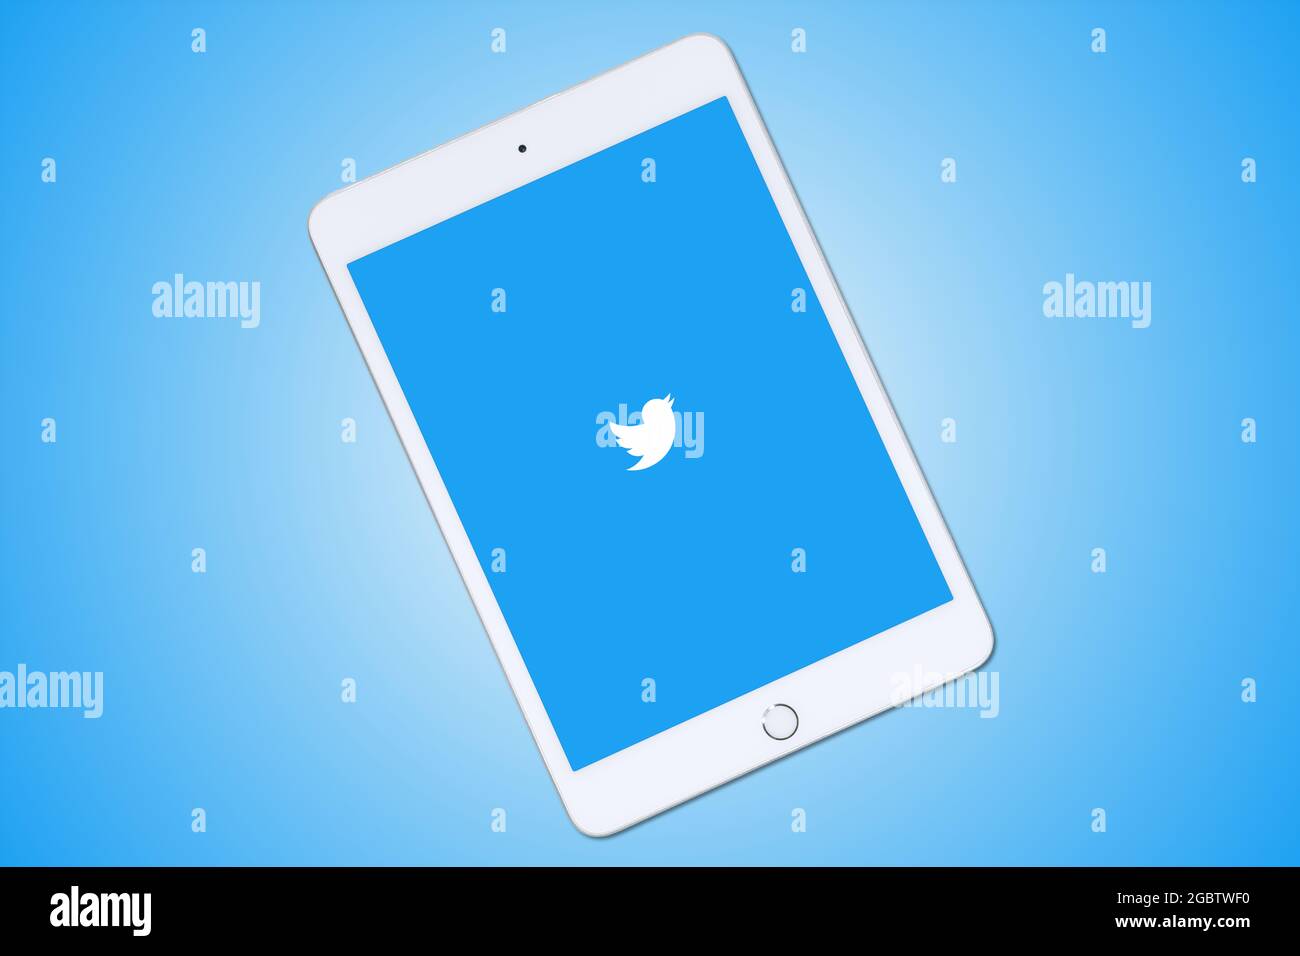 Logo Twitter sur Apple iPad mini PC tablette numérique blanc, isolé sur fond bleu. Twitter est un réseau social, des messages appelés « tweets ». Banque D'Images